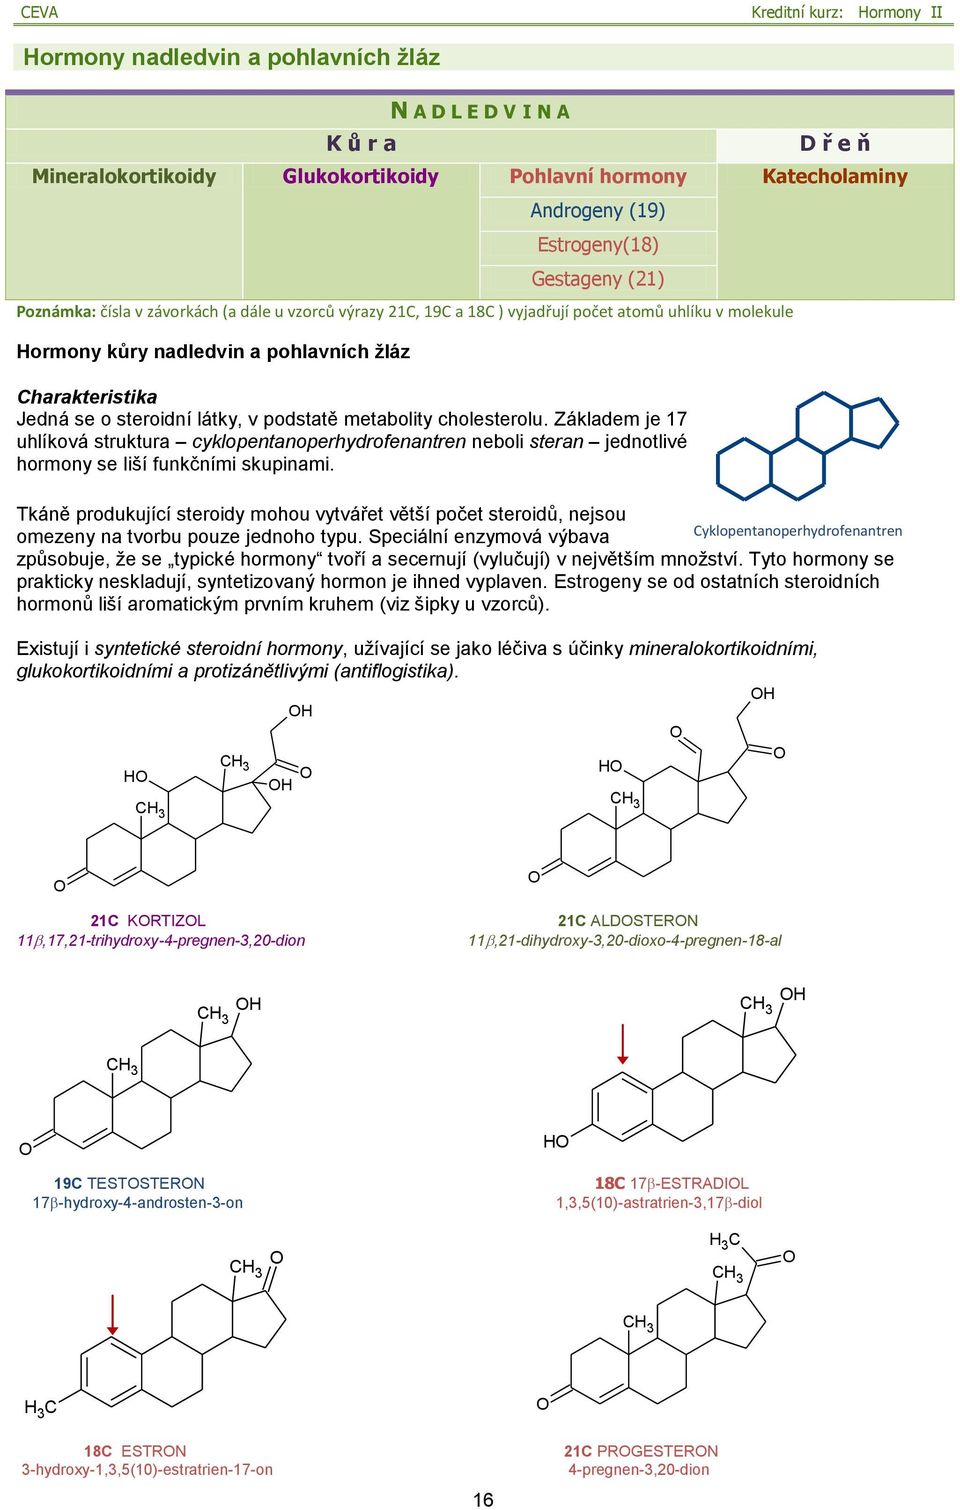 cholesterolu. Základem je 17 uhlíková struktura cyklopentanoperhydrofenantren neboli steran jednotlivé hormony se liší funkčními skupinami.